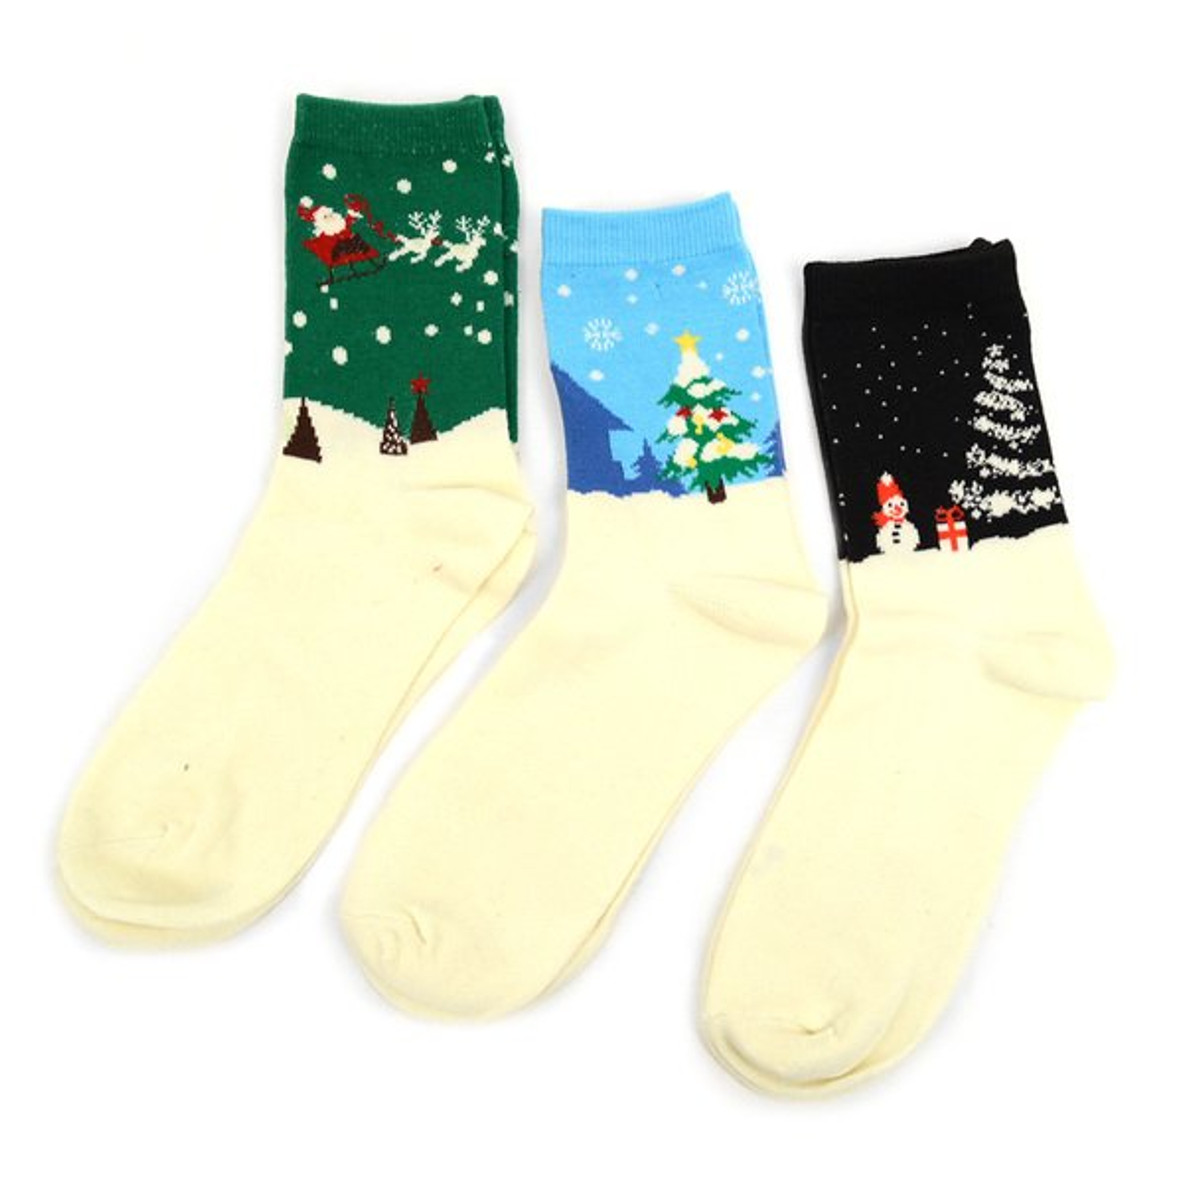 Women's Winter Wonderland Crew Novelty Socks 3 Pair Pack